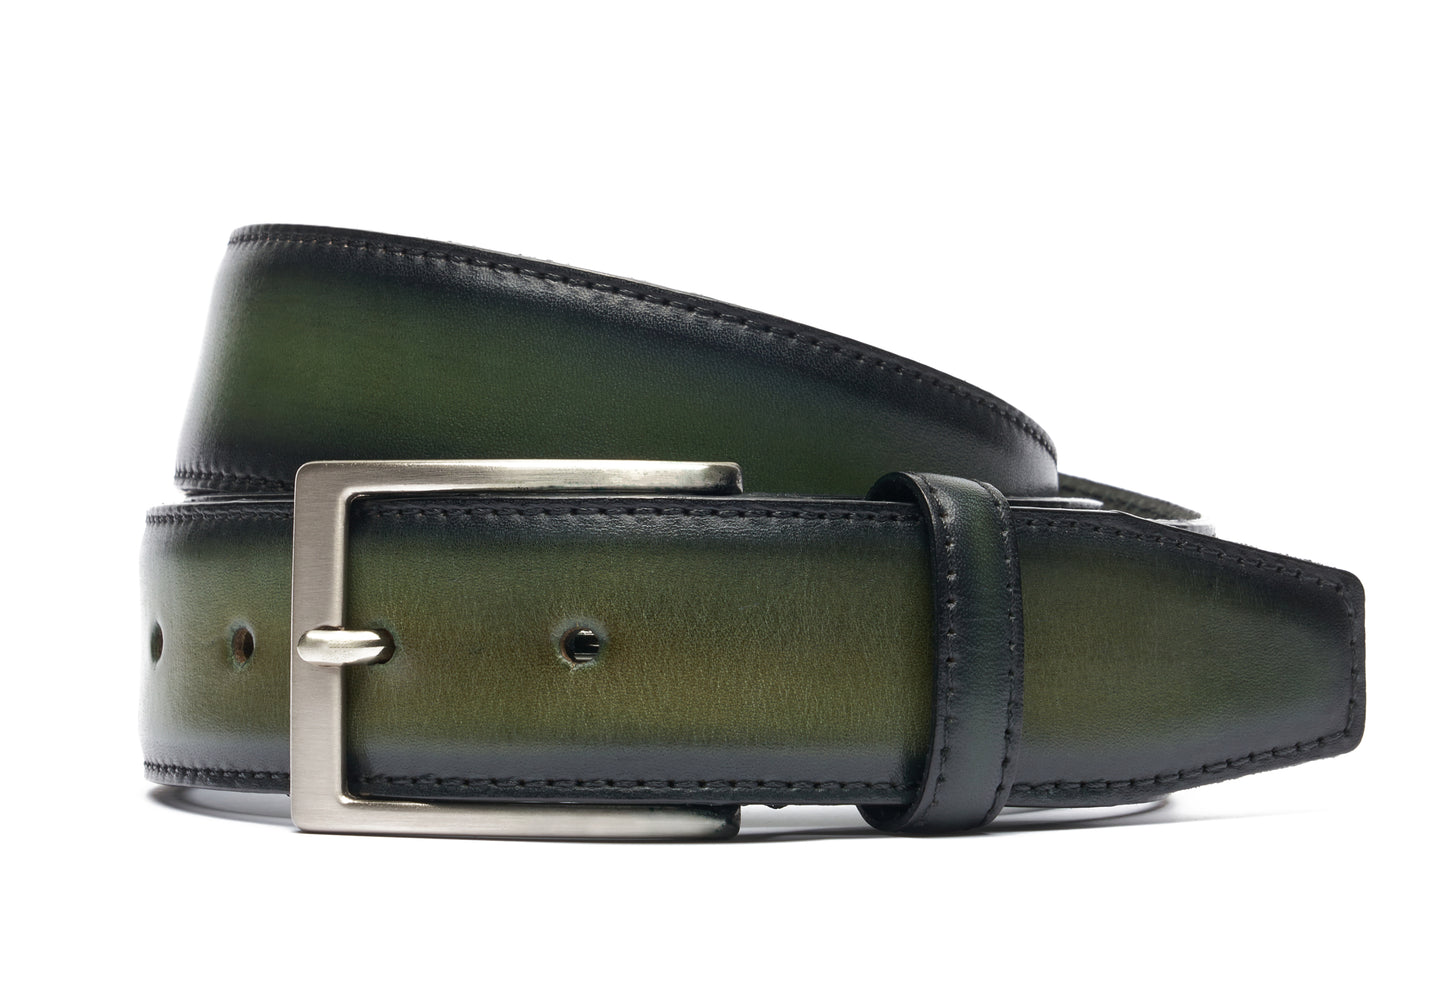 Antiqued belt